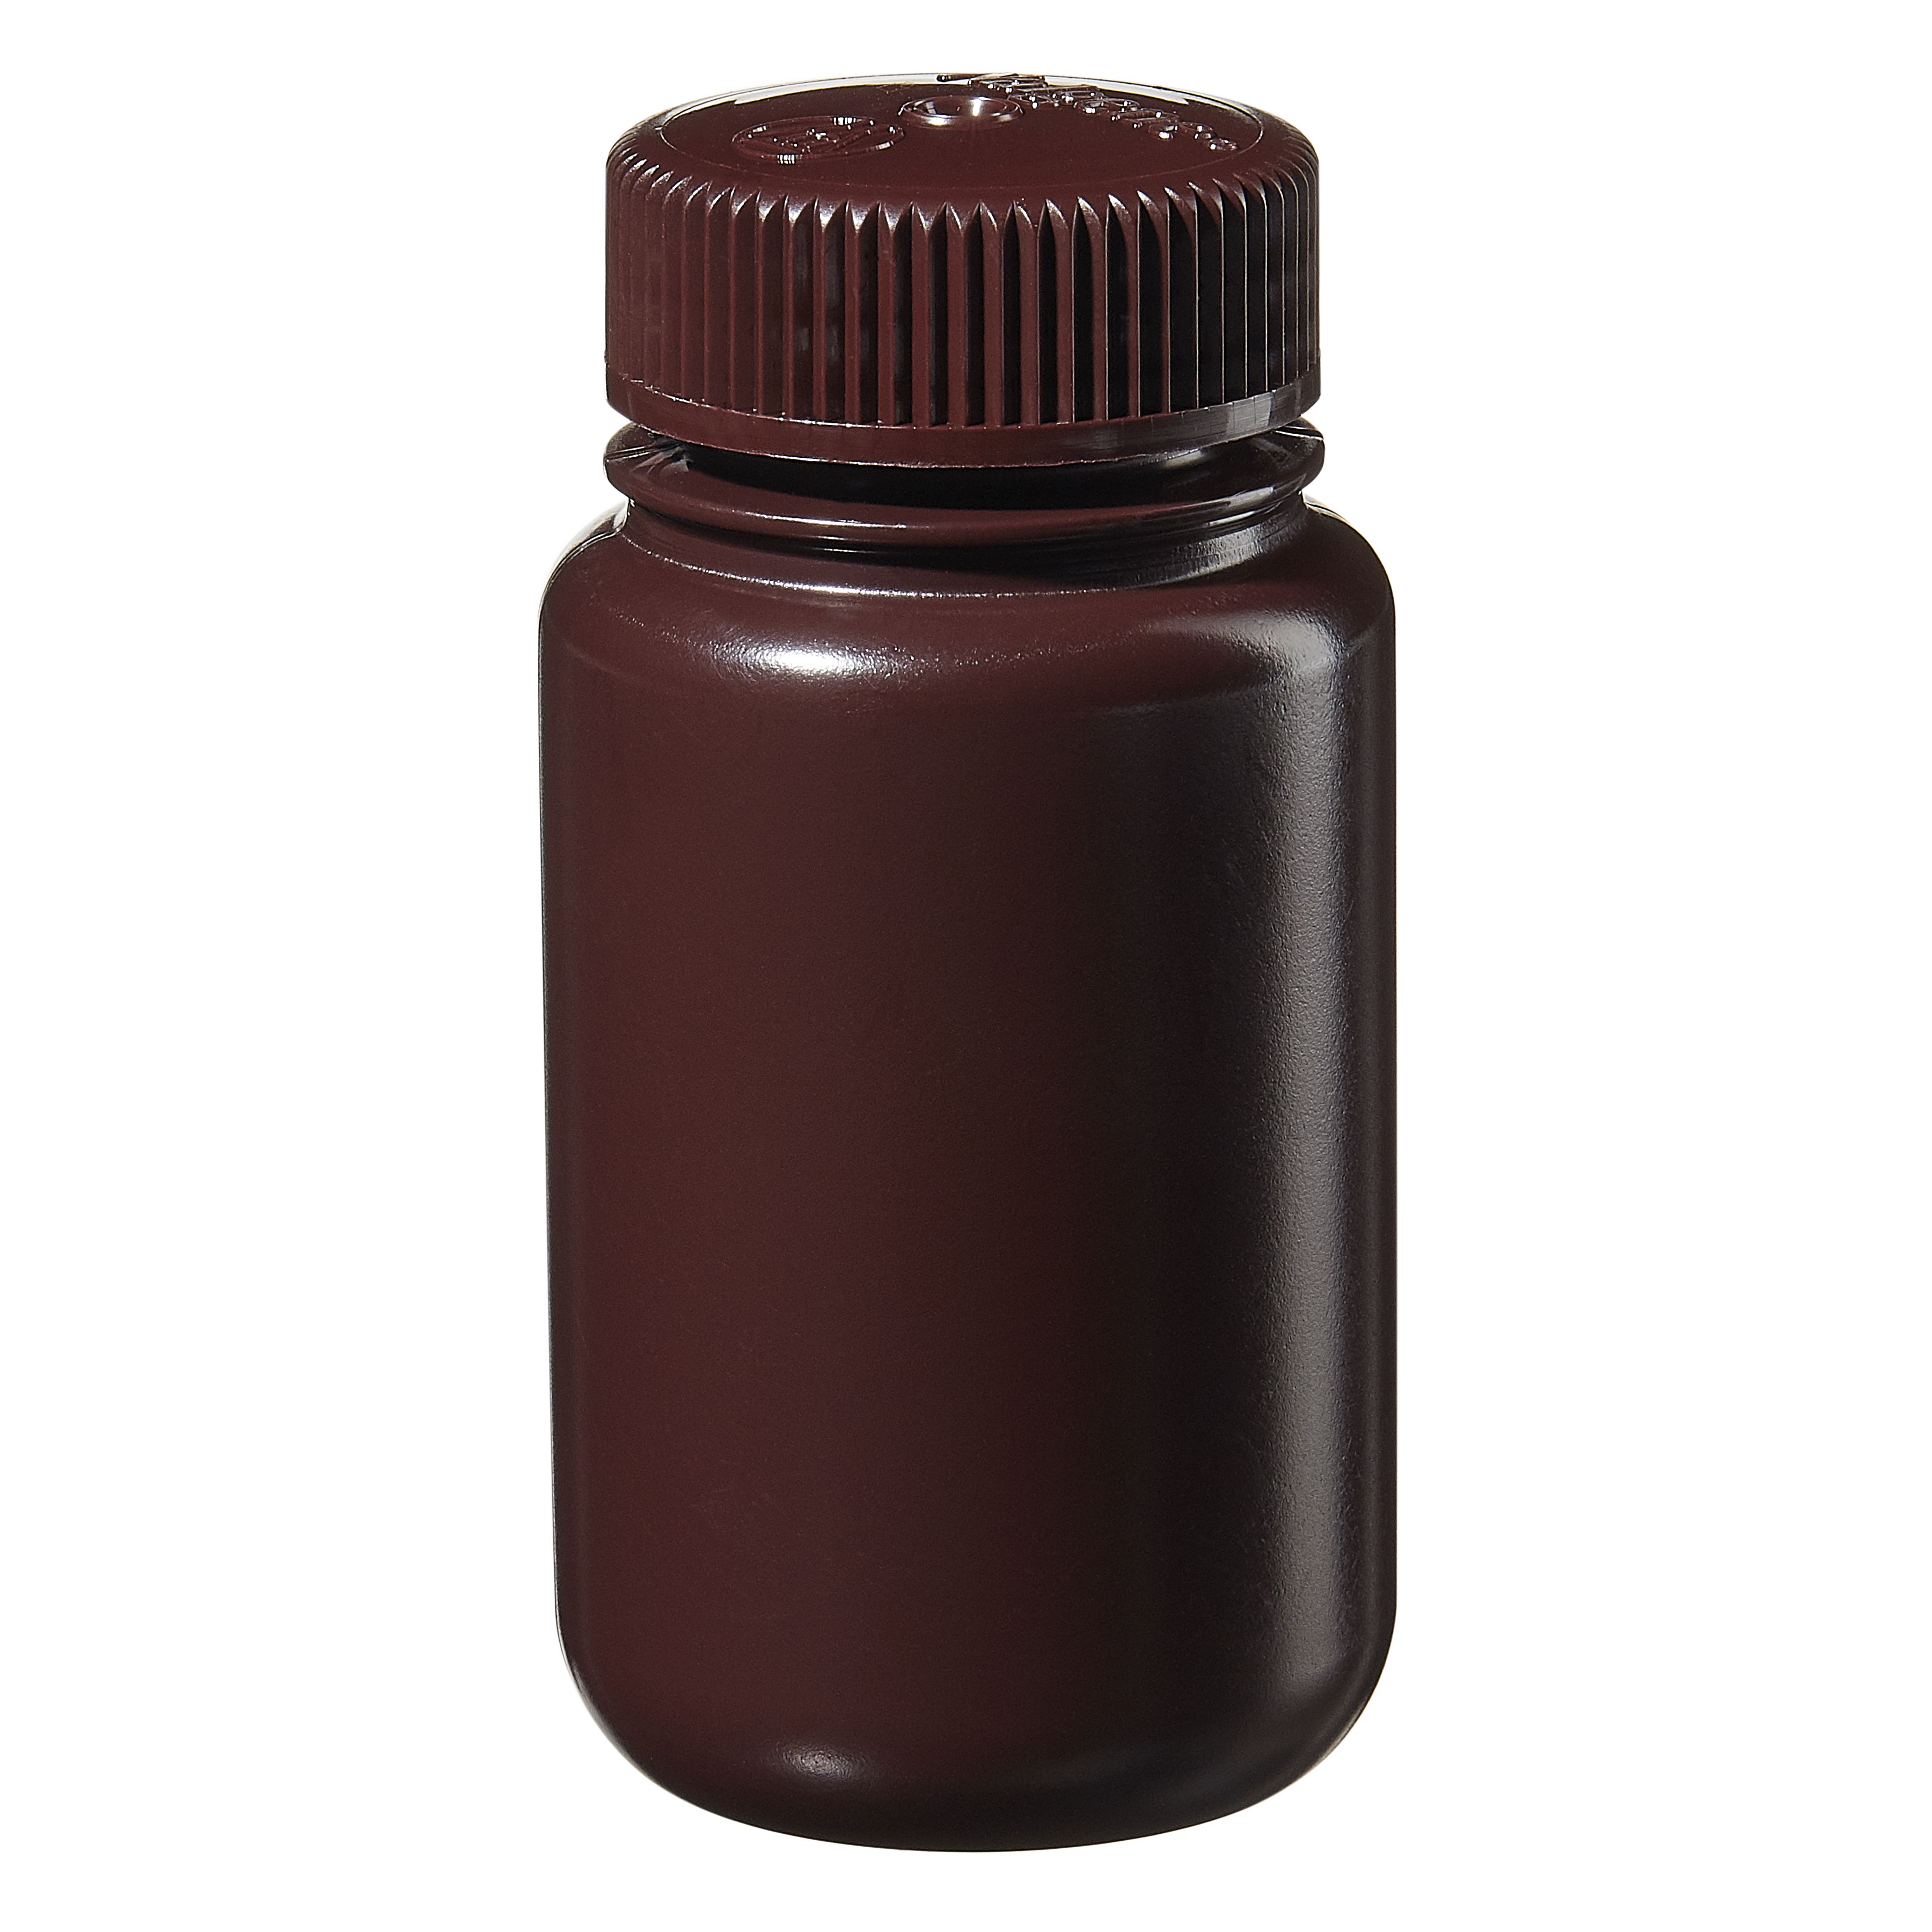 [Thermo Nalgene] 2106-0004 / 125mL Nalgene Wide-Mouth Lab Quality Amber HDPE Bottle